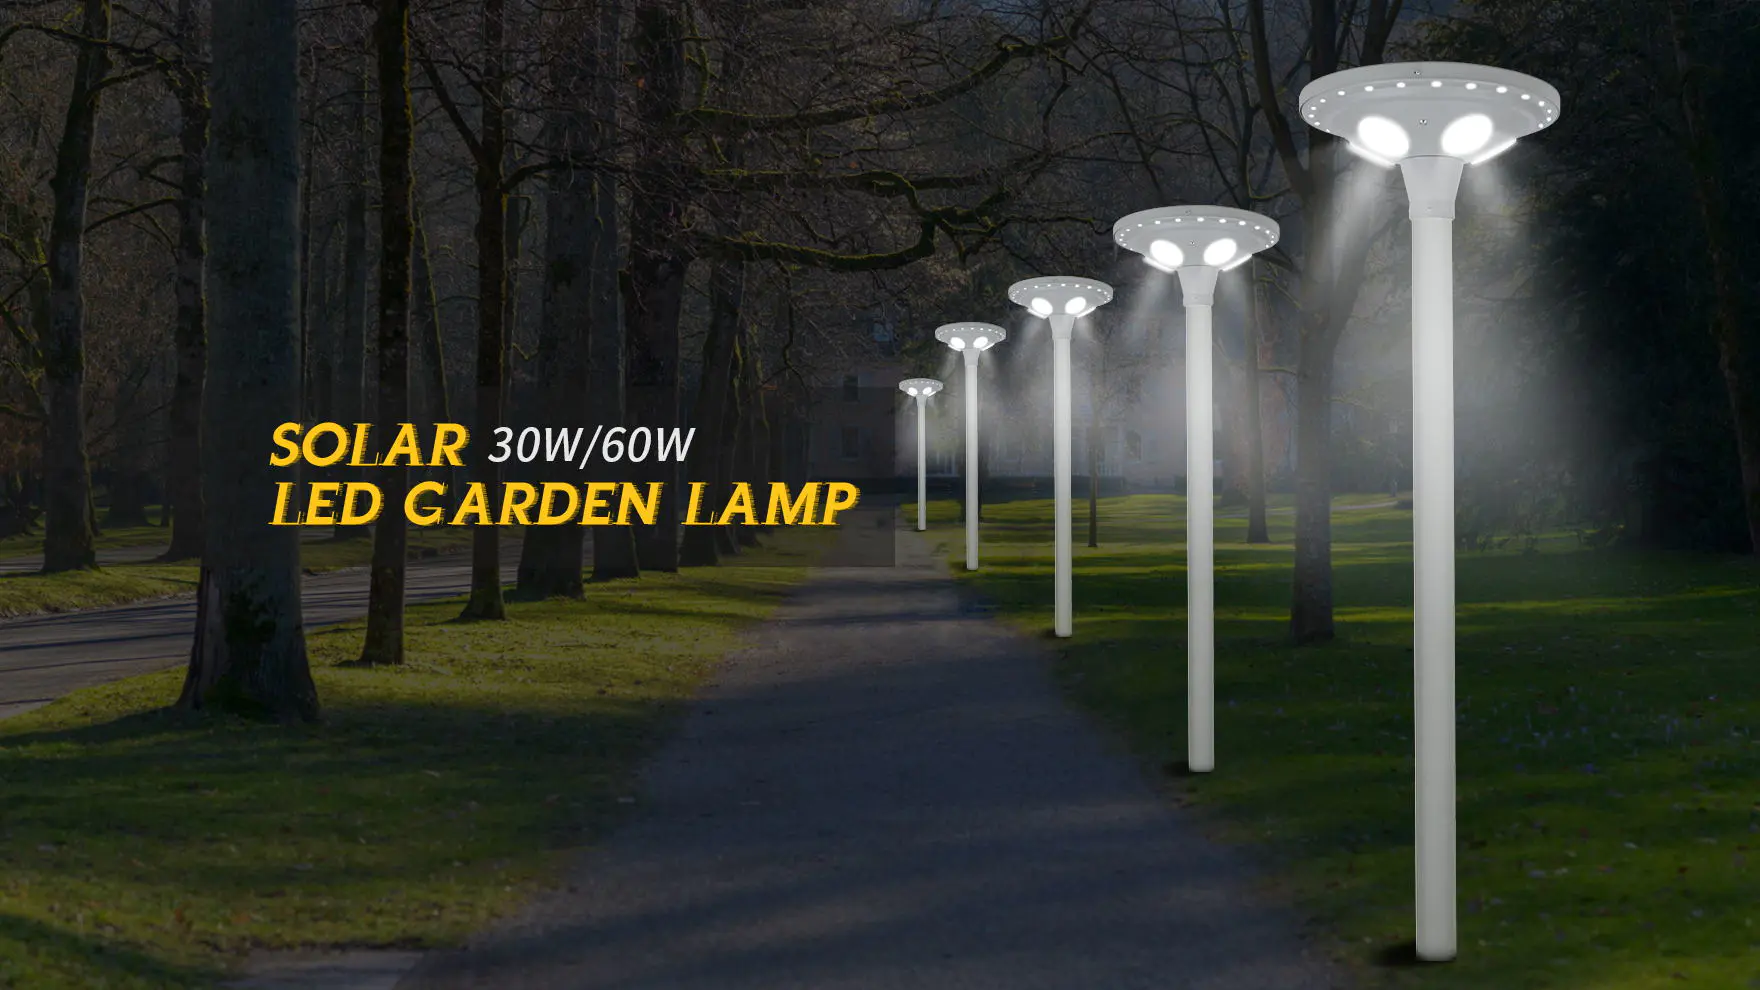 ALLTOP wholesale solar garden light supply for landscape